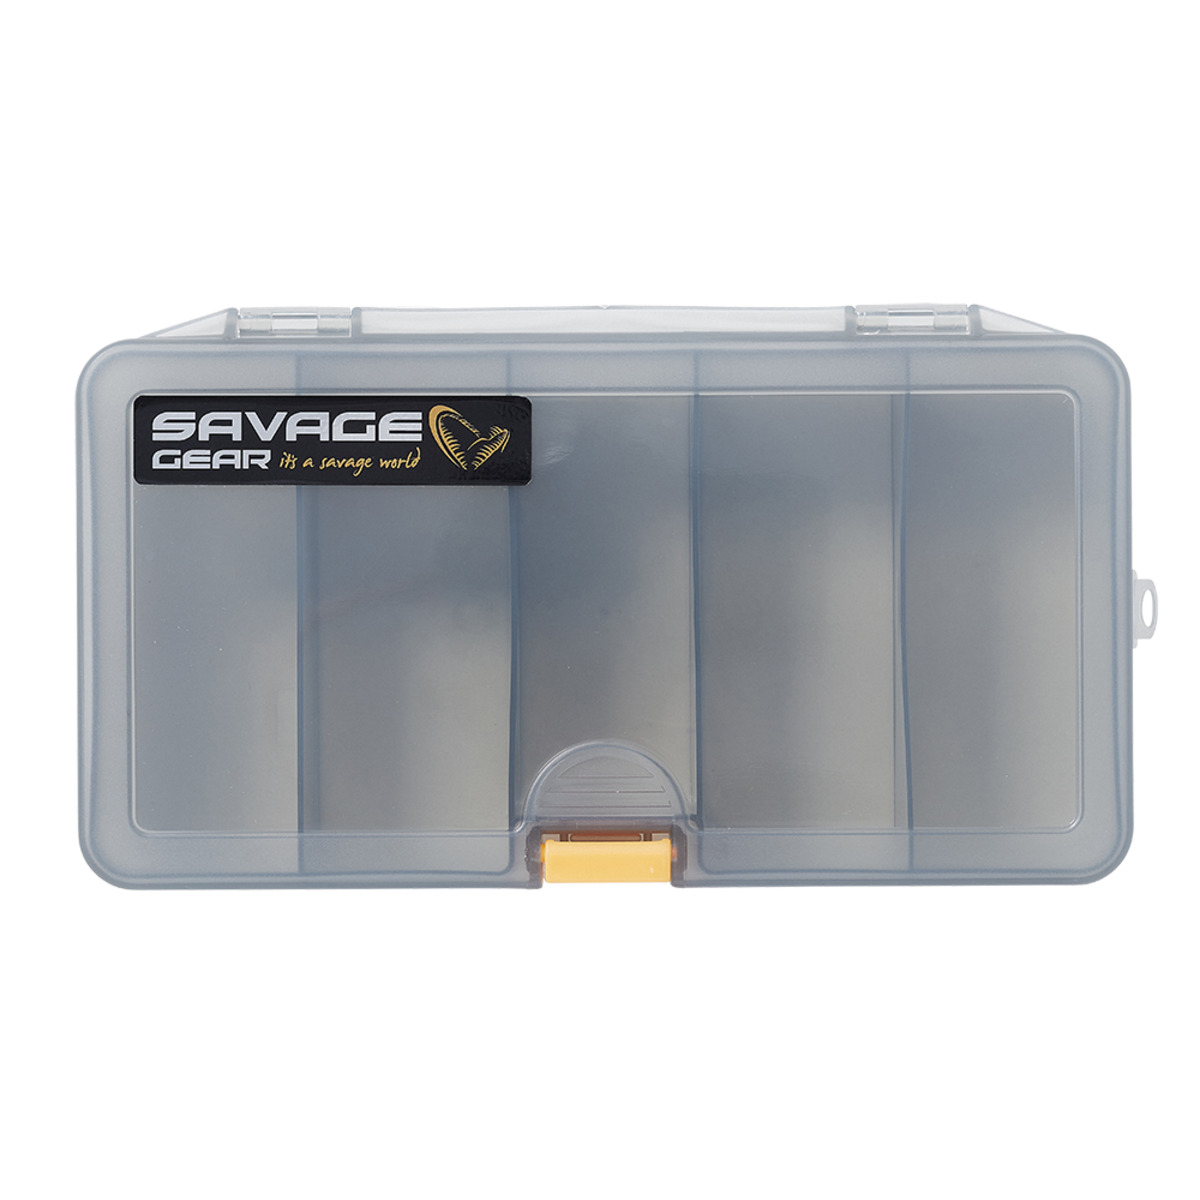 Savage Gear Smoke 13.8x7.7x3.1cm 1 Cassette - LUREBOX 4A SMOKE 21.4X11.8X4.5CM CASSETTE